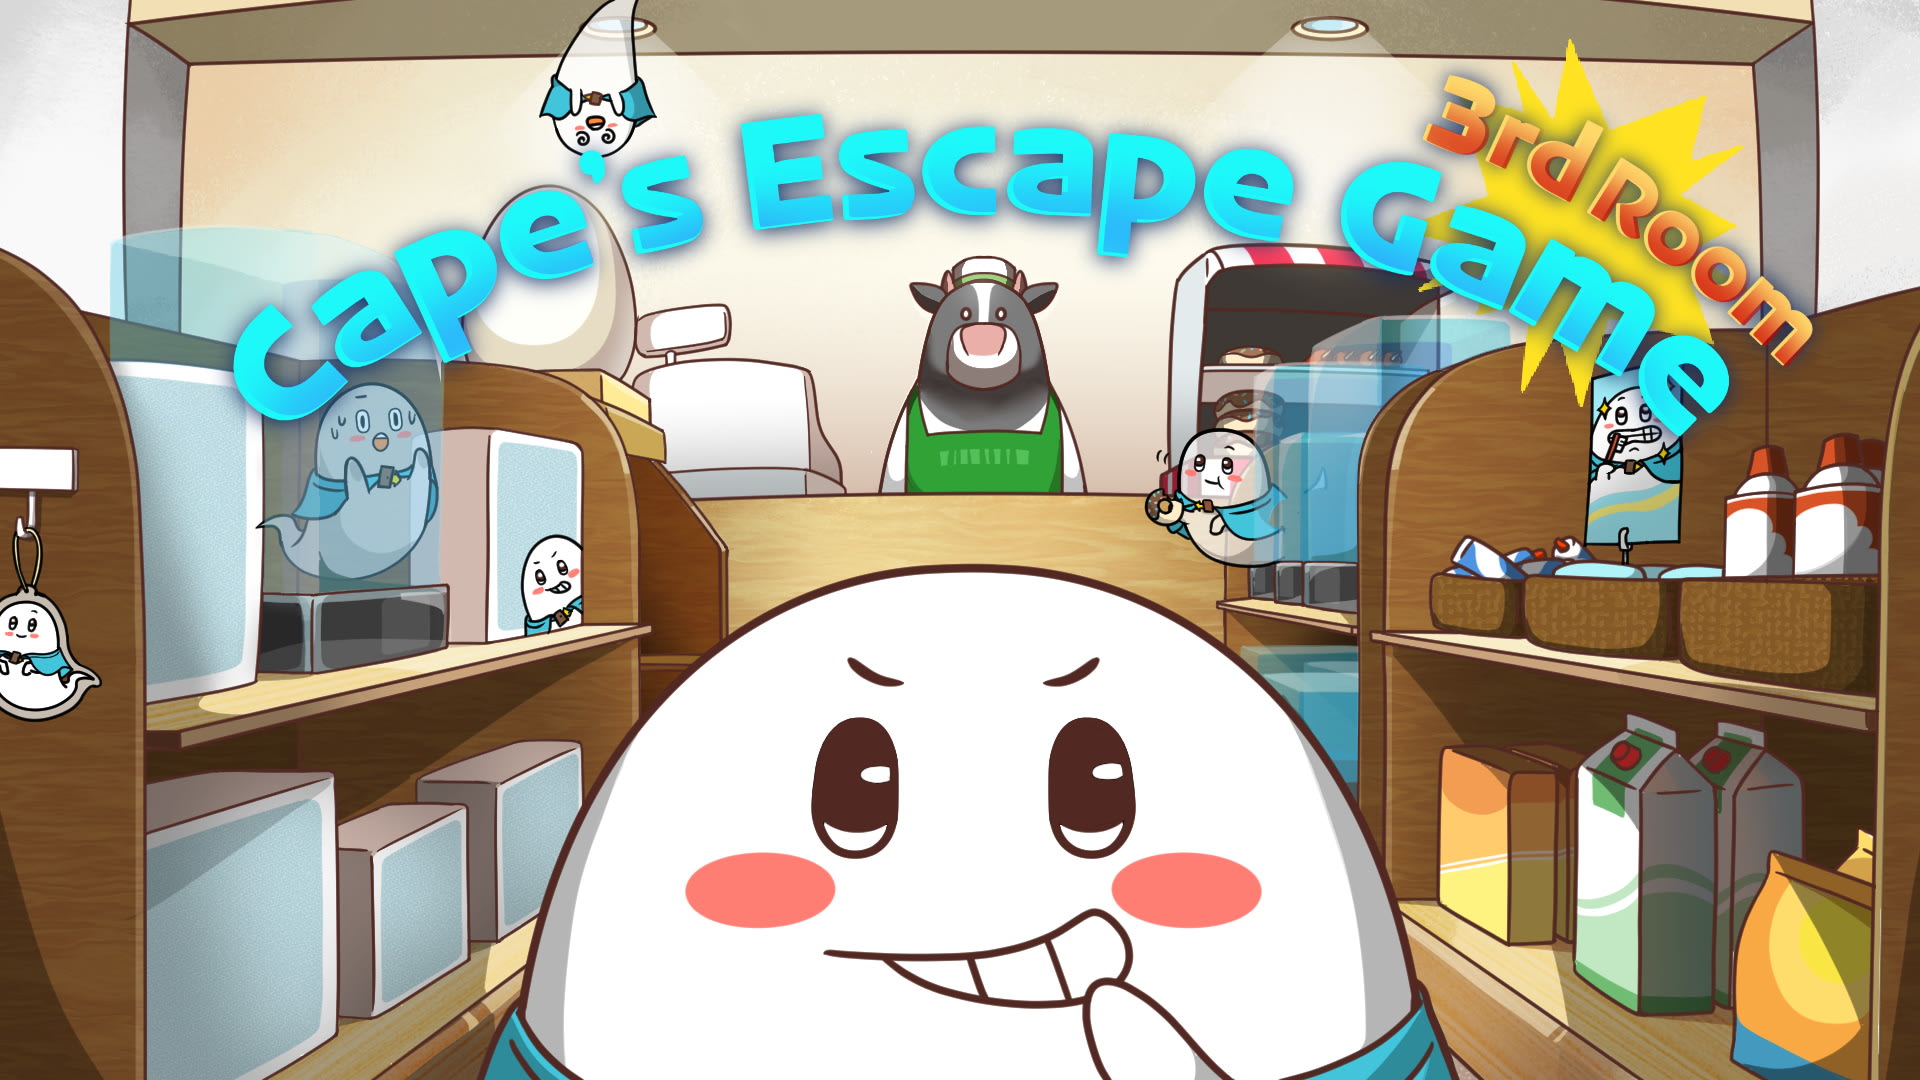 Cape’s Escape Game 3rd Room